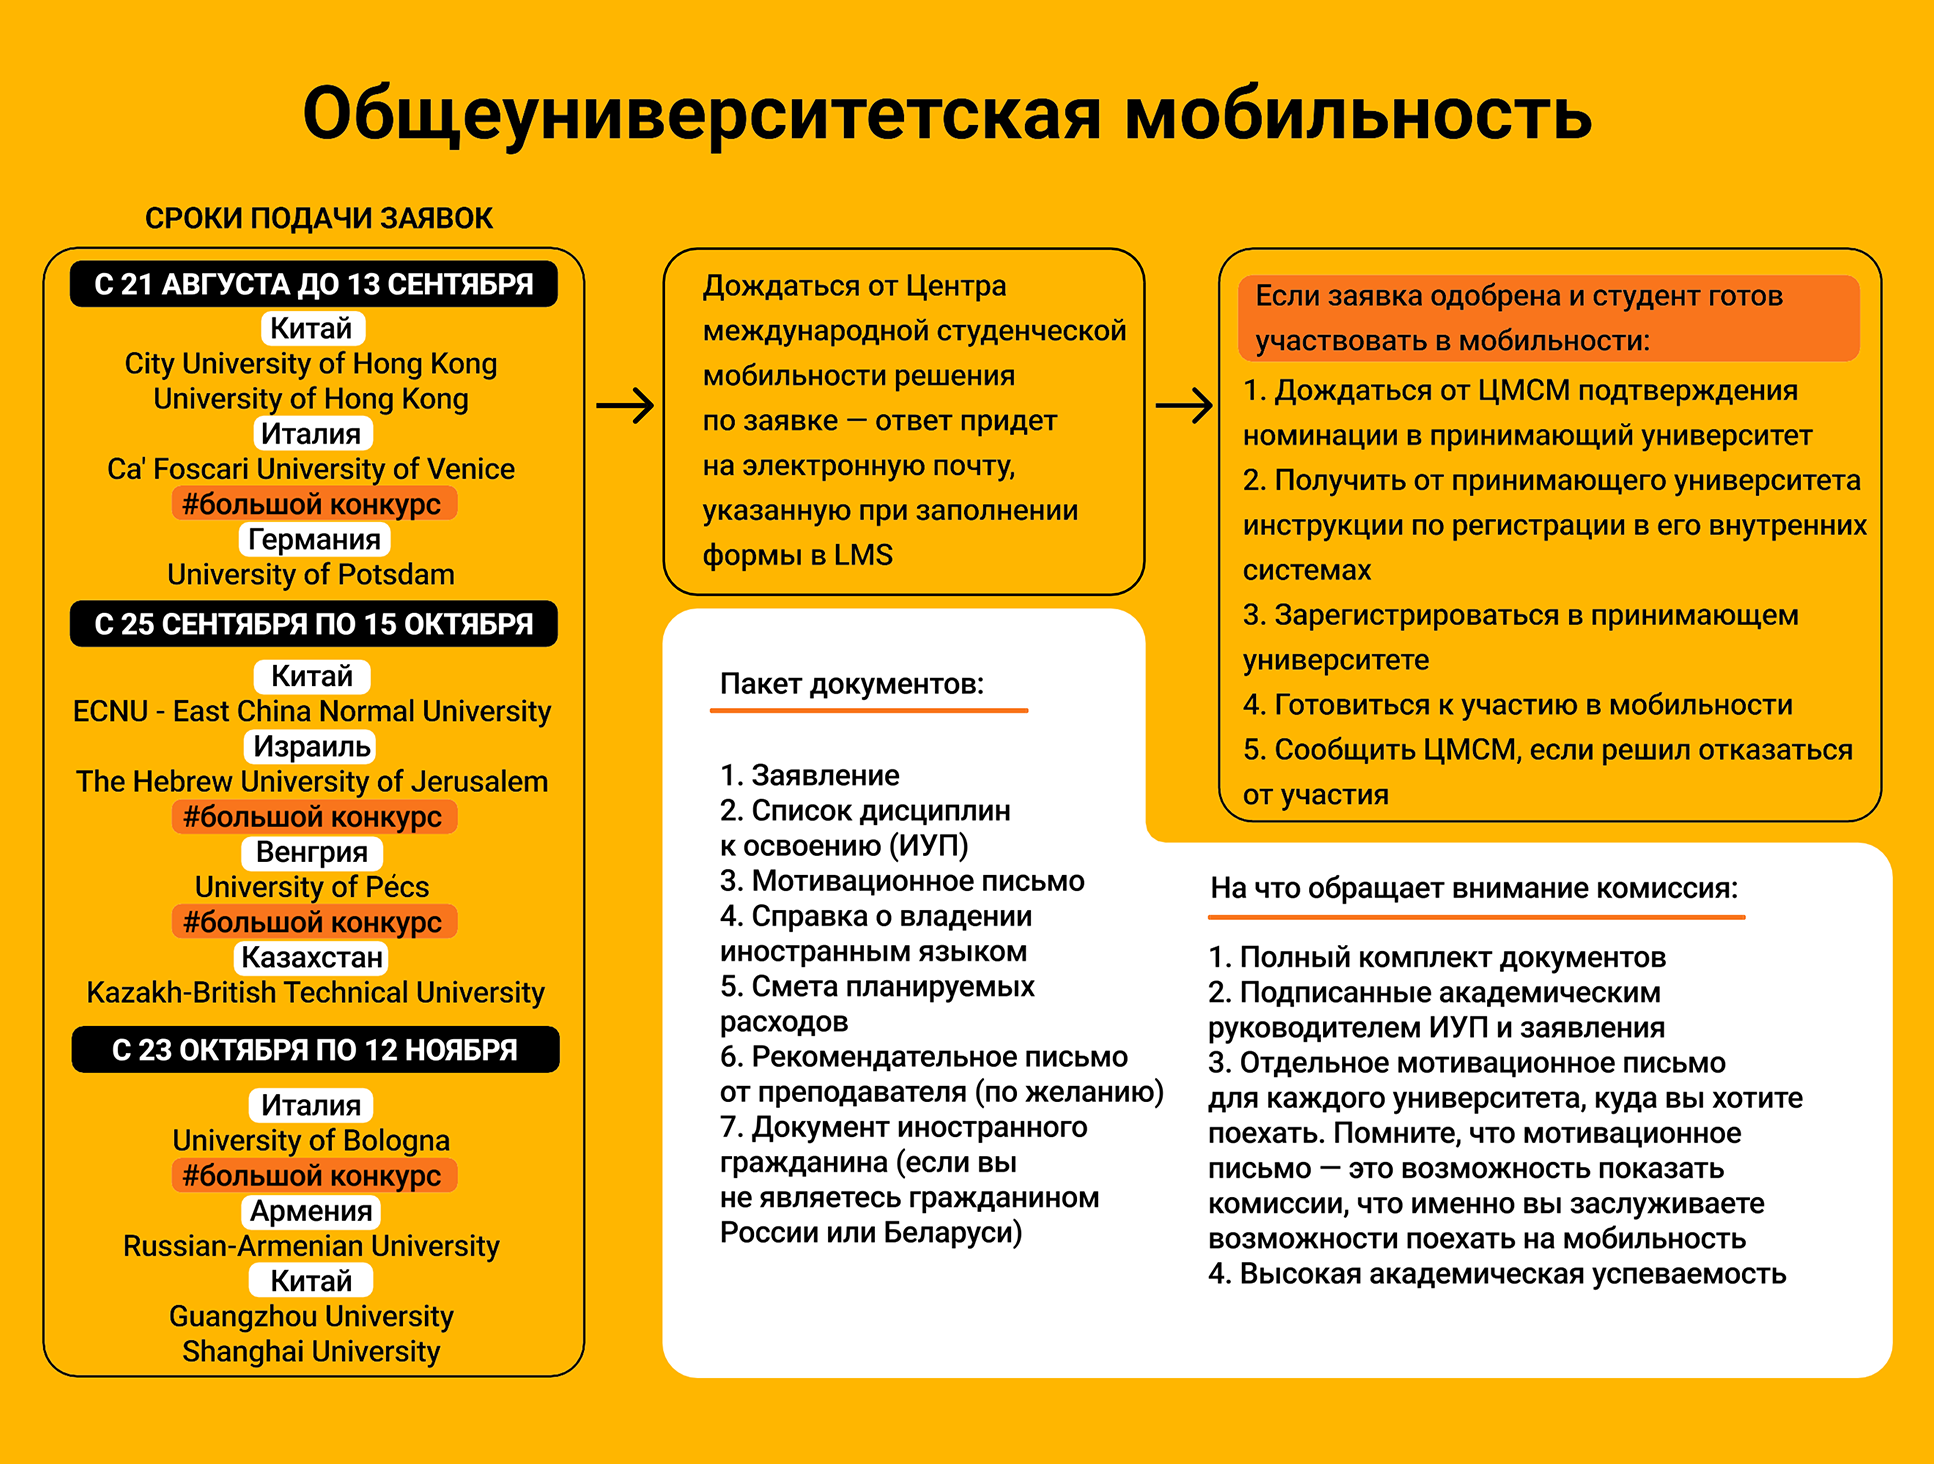 Список документов для студентов НИУ ВШЭ. Источник: hse.ru